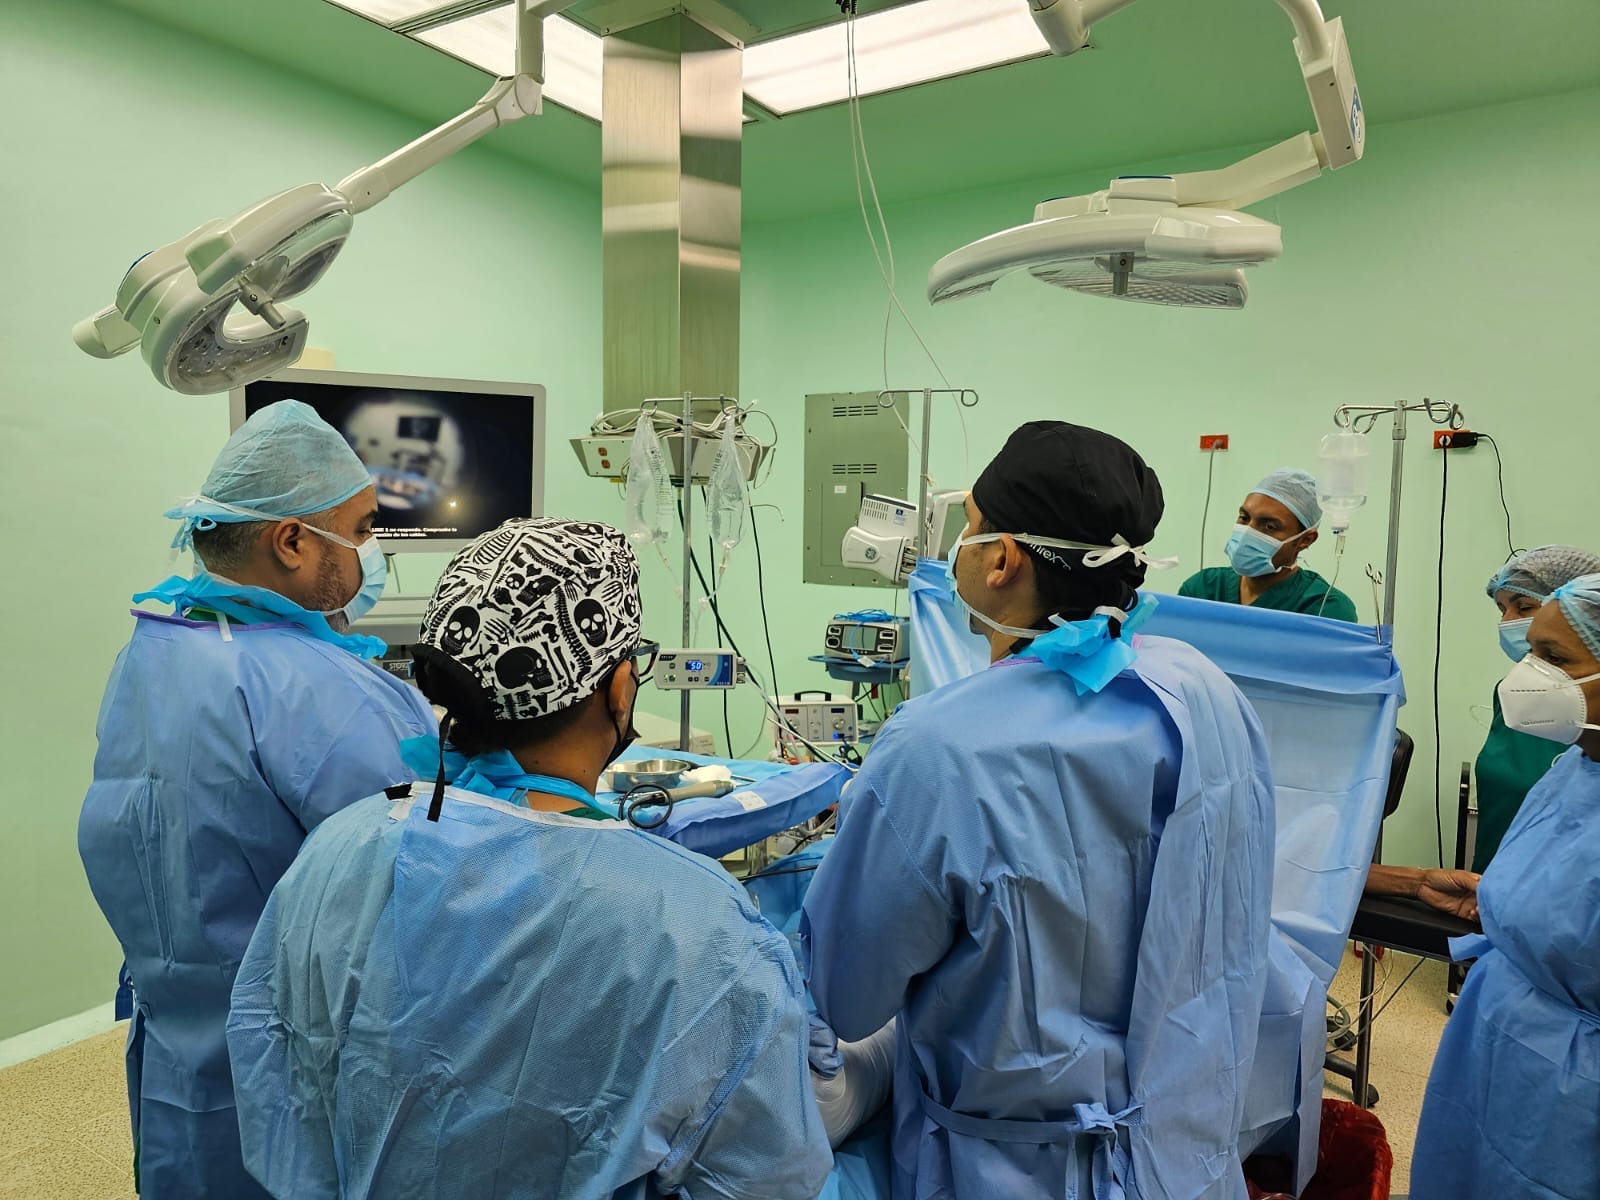 Primera artroscopia de rodilla se realiza en Los Santos